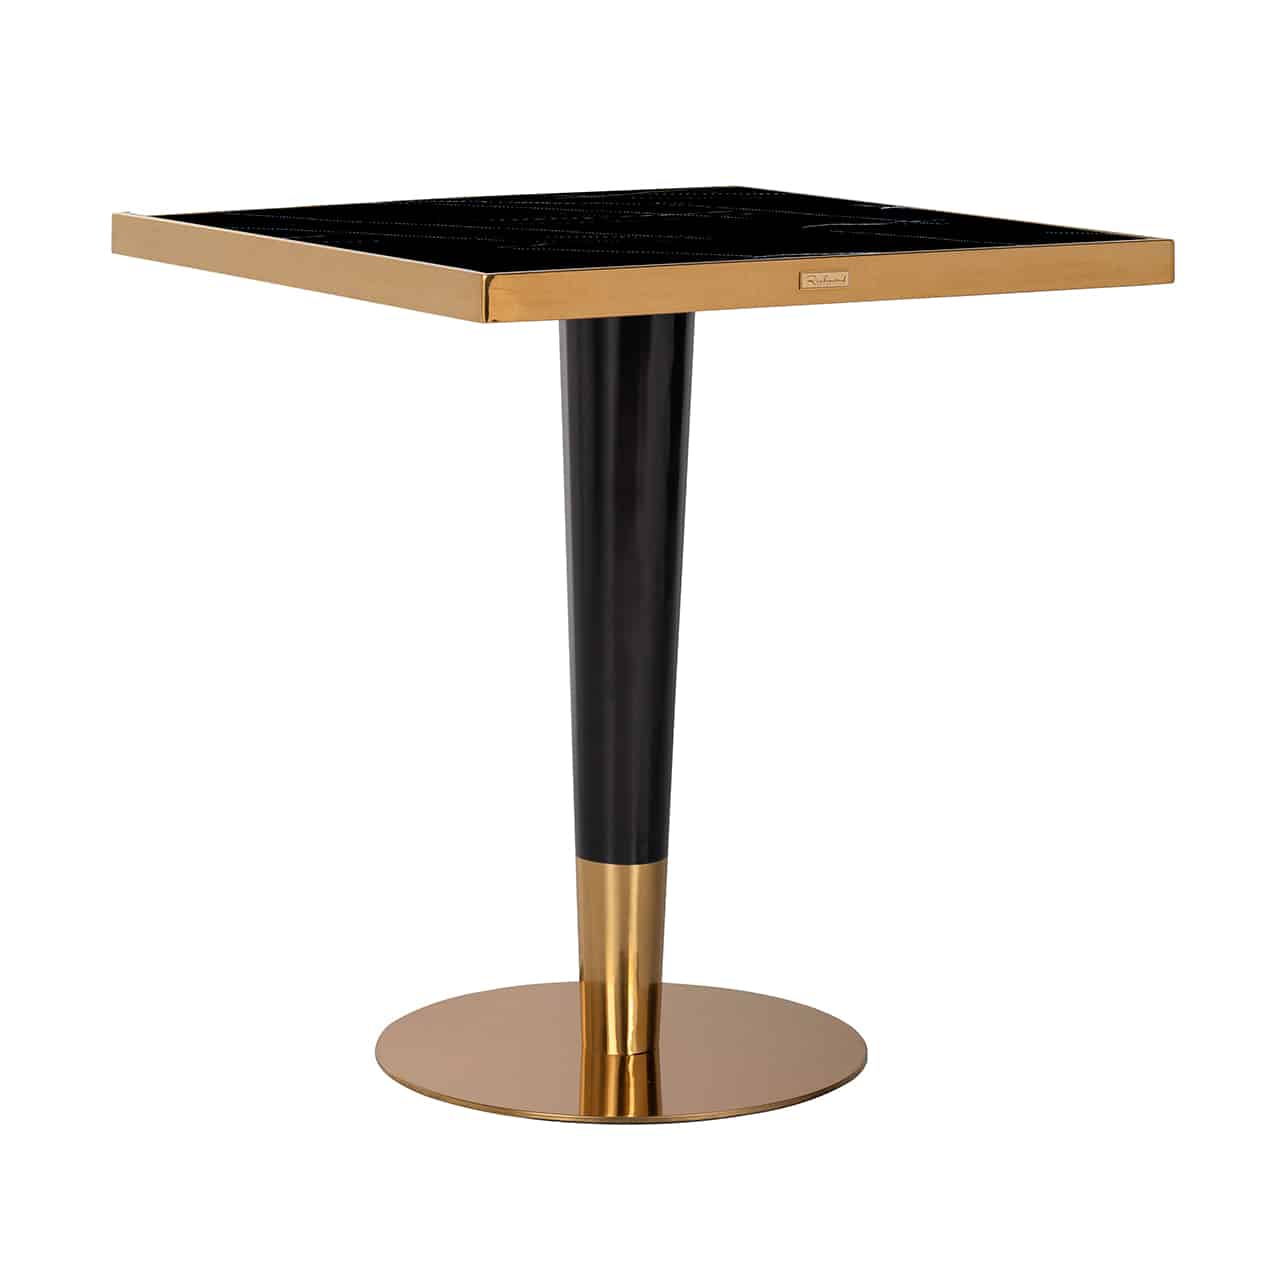 Kleiner, quadratischer Tisch  mit einer schwarzen Tischplatte, mit einer Goldleiste umrandet; mittig ein leicht konisch zulaufender, runder Fuß in schwarz mit unten goldener Manschette, sowie einem goldenen Standteller.